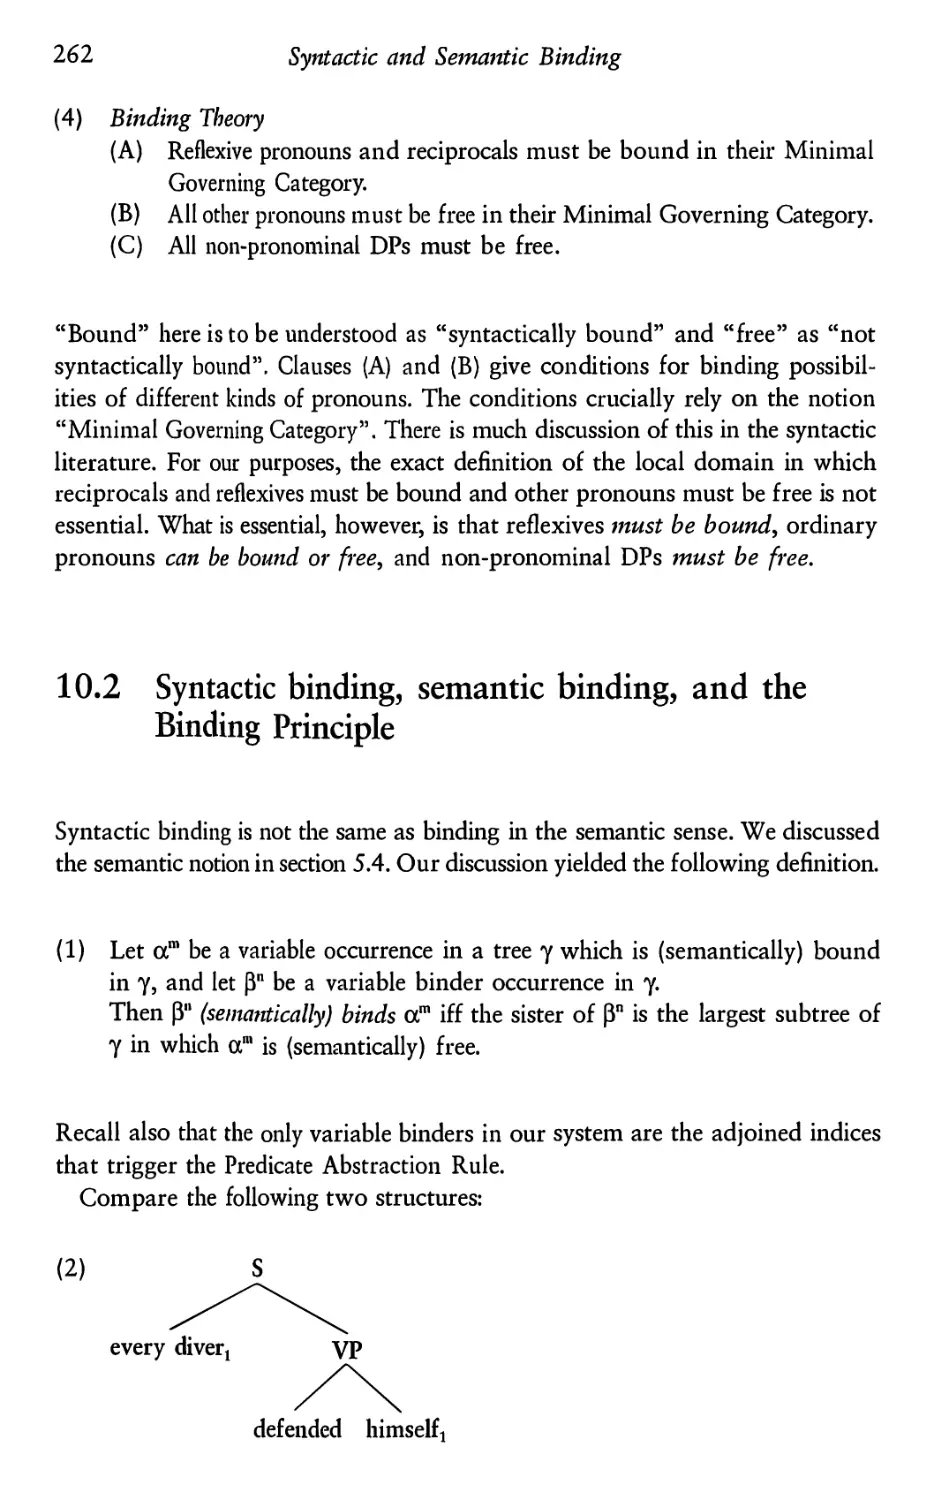 10.2 Syntactic binding, semantic binding, and the Binding Principle